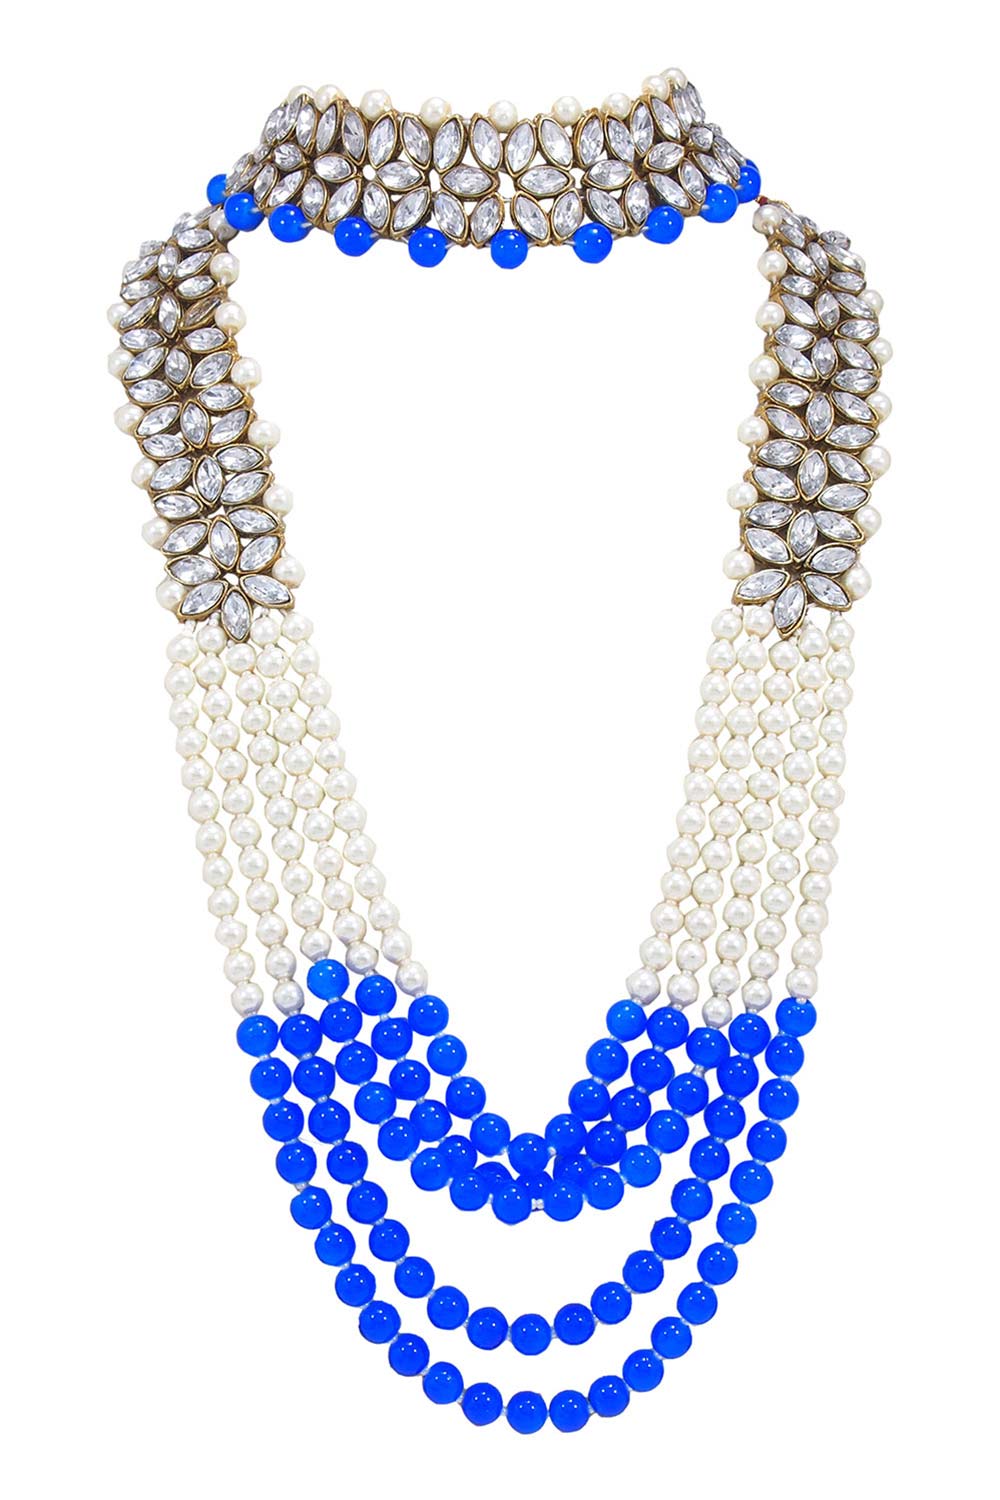 Buy Women's Alloy Necklace Set in Blue Online - Side